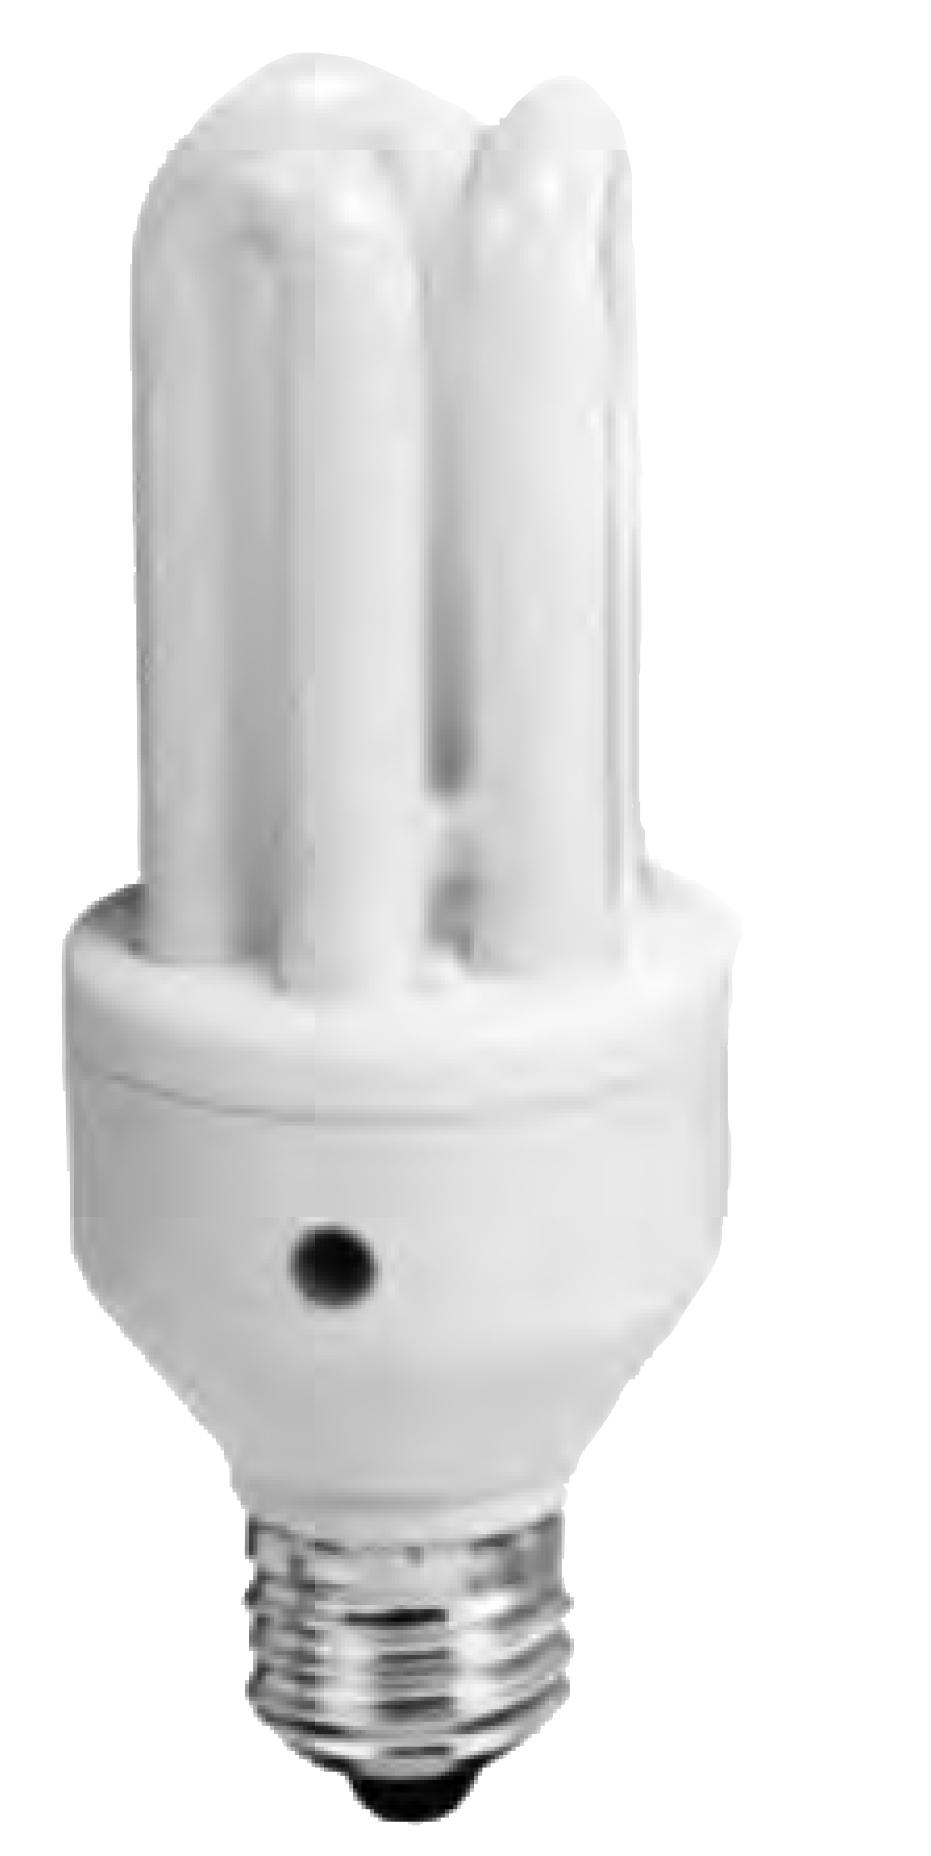 Sensor Lamp Image